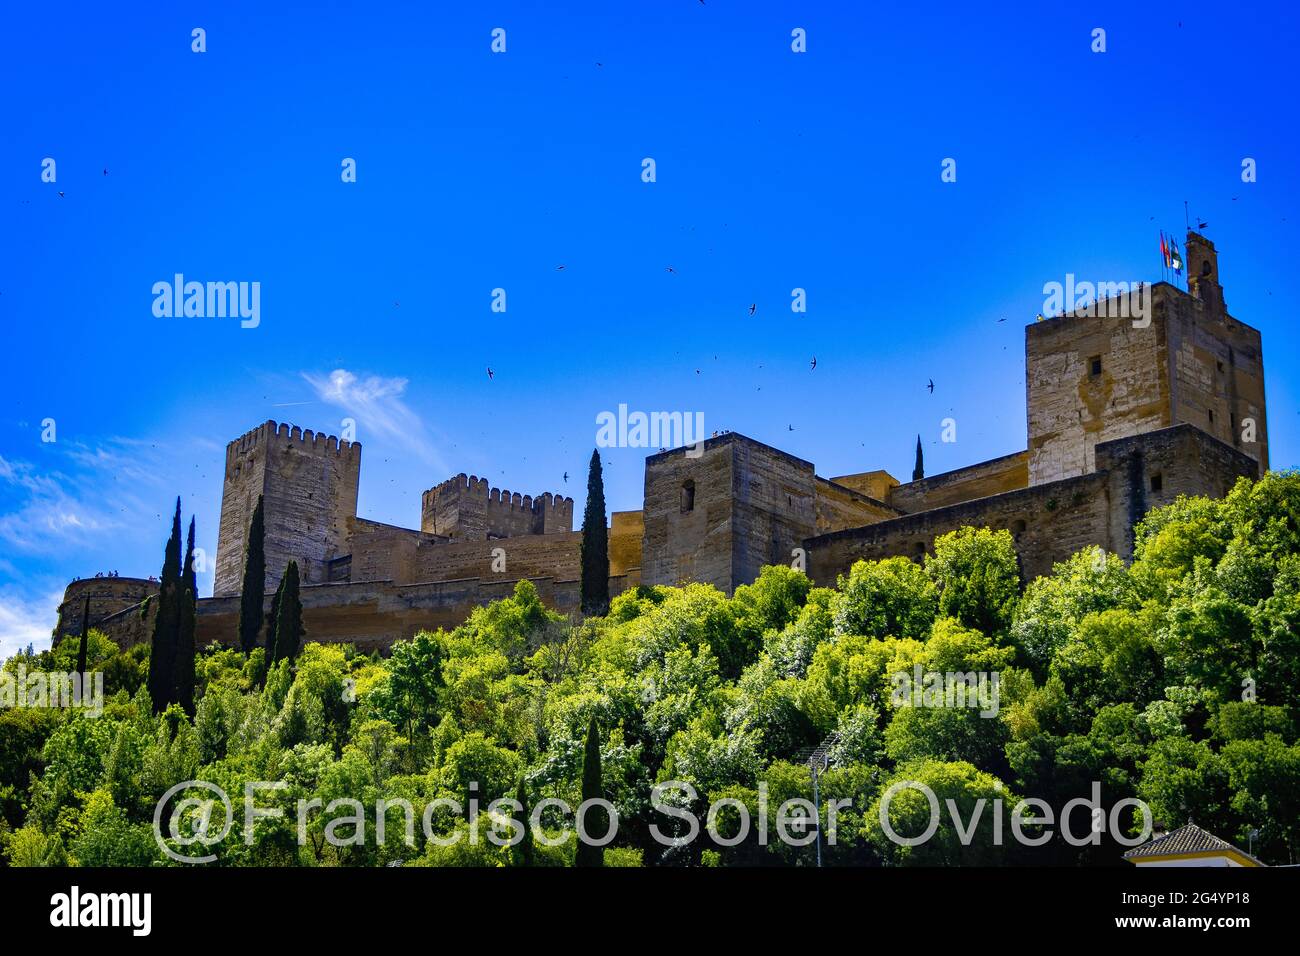 La Alhambra  de Granada situada en la parte más occidental del cerro de Sabika, de planta trapezoidal algo irregular, constituía la zona militar, Stock Photo